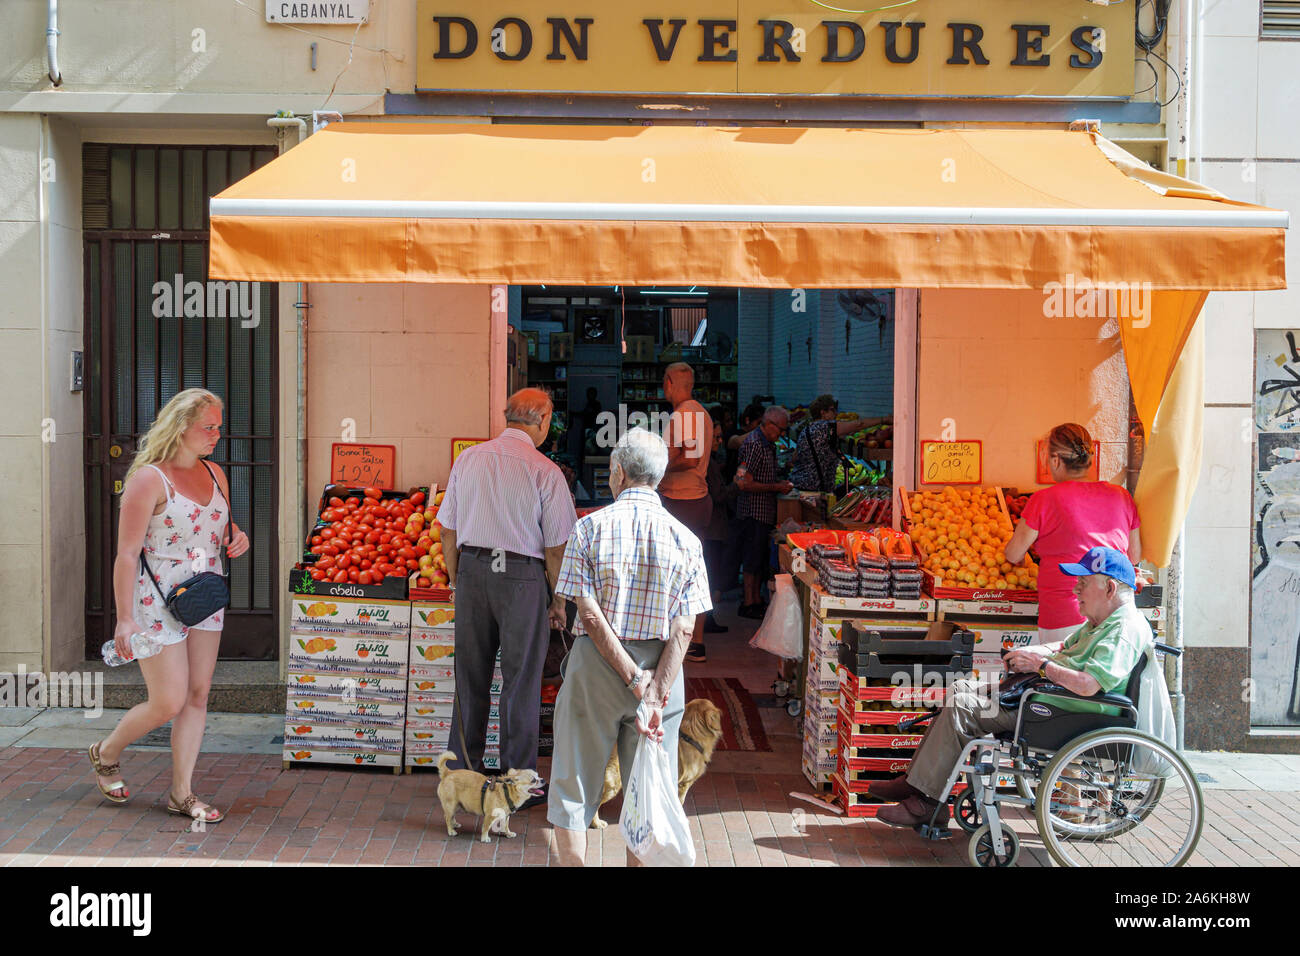 Barcelone Espagne,Catalogne Catalunya,El Clot,quartier fruits fruits produits légumes légumes marché stand, petite entreprise, homme hommes hommes adulte adul Banque D'Images